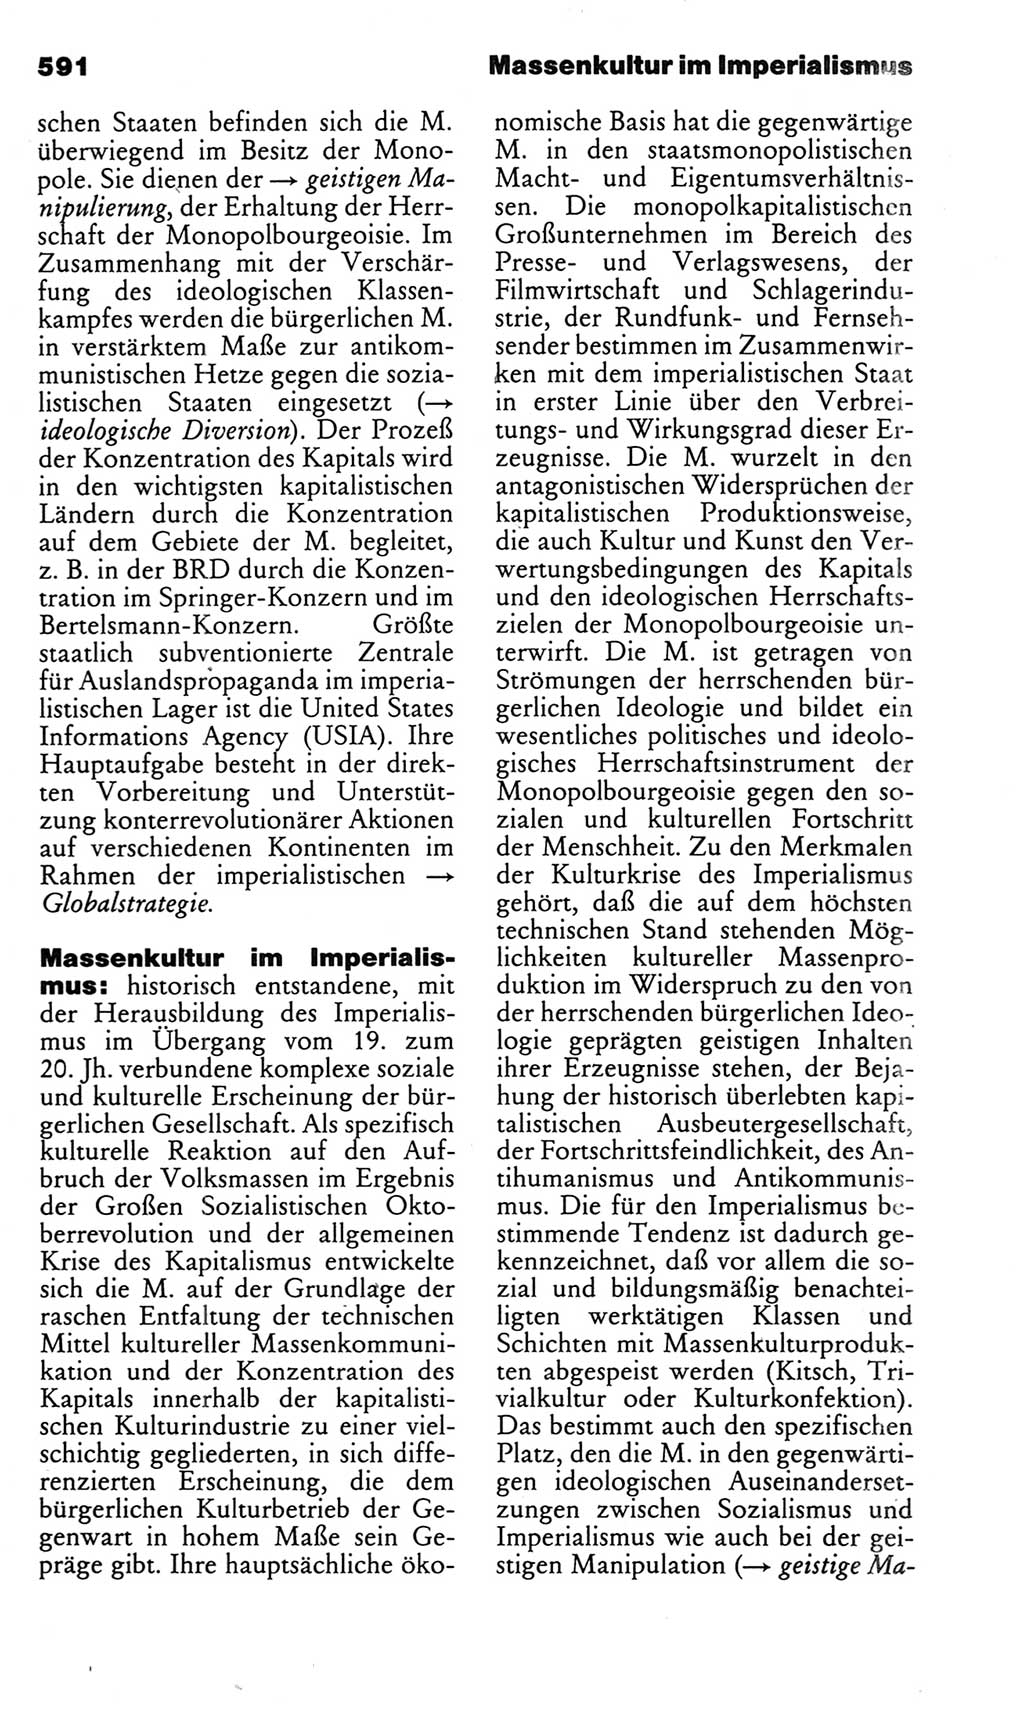 Kleines politisches Wörterbuch [Deutsche Demokratische Republik (DDR)] 1983, Seite 591 (Kl. pol. Wb. DDR 1983, S. 591)